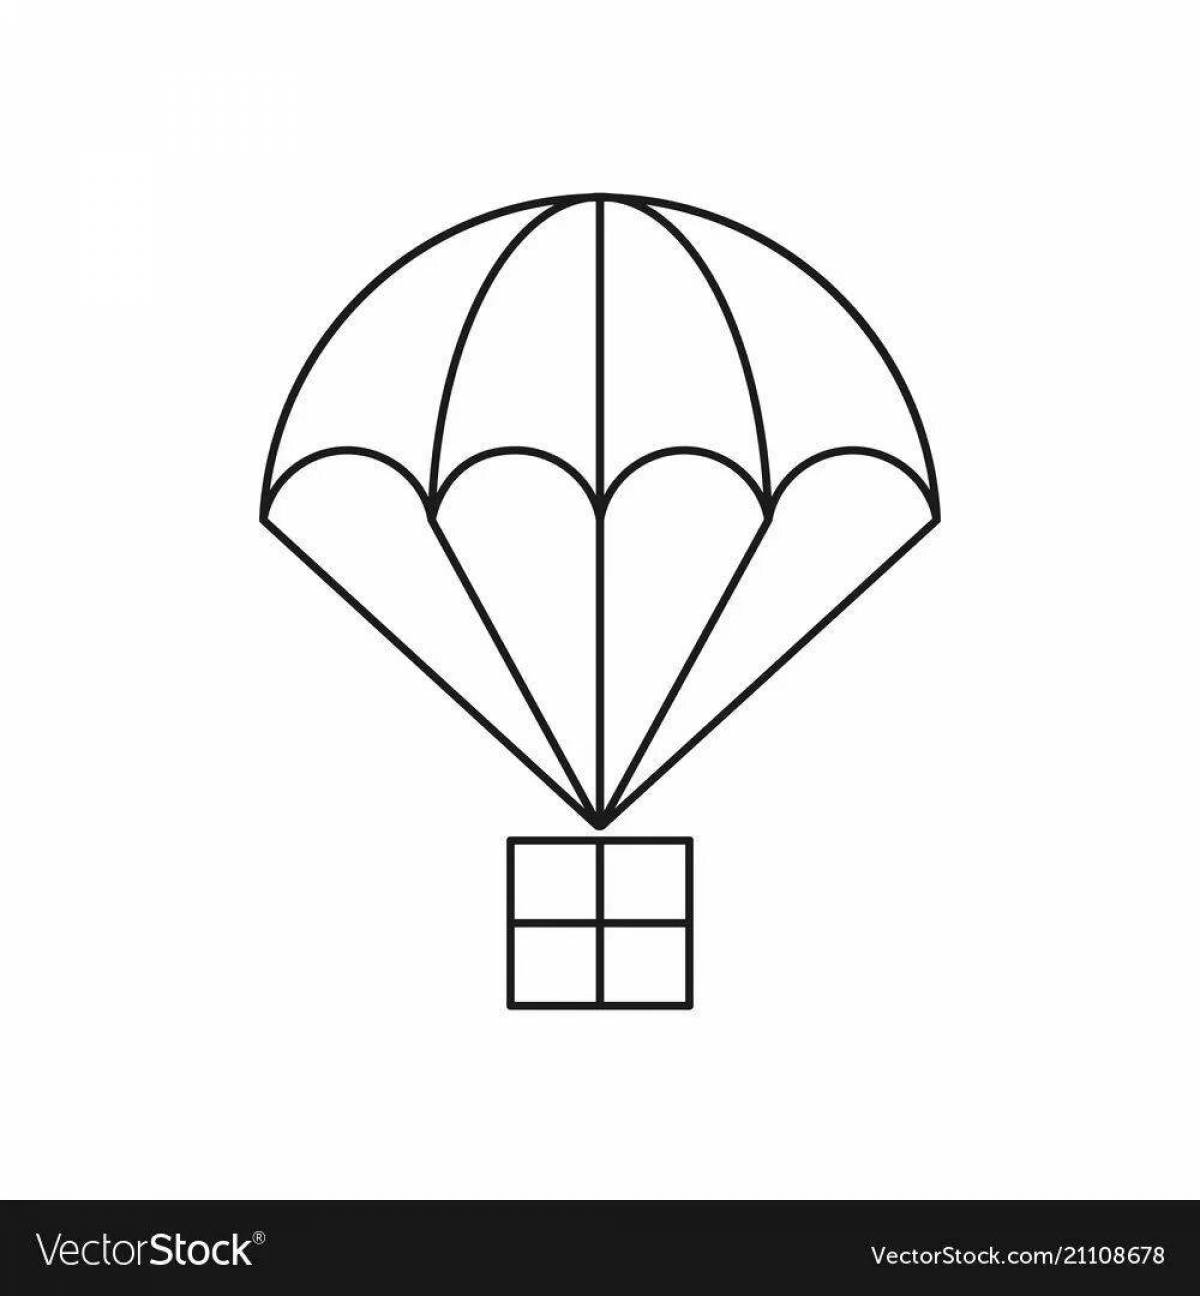 Анимированная страница раскраски парашютистов для детей